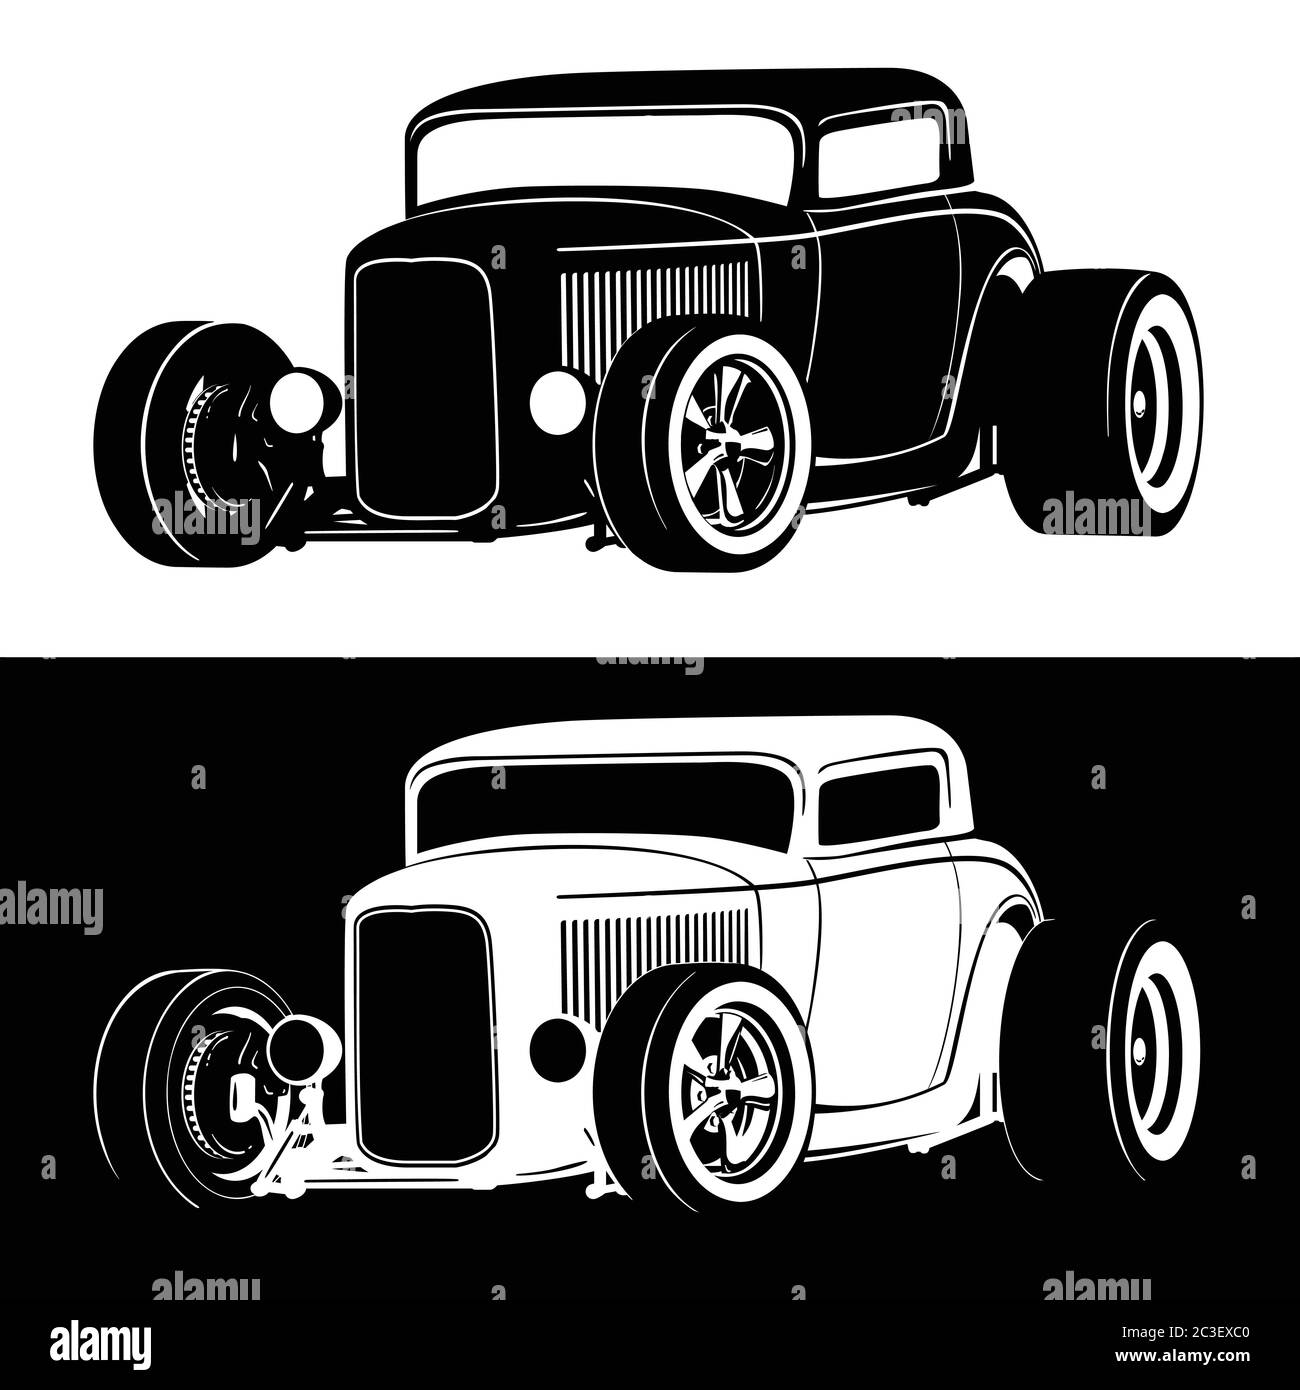 Klassische amerikanische Hot Rod Auto isoliert Vektor-Illustration in beiden schwarz auf weiß und weiß auf schwarz Versionen Stock Vektor